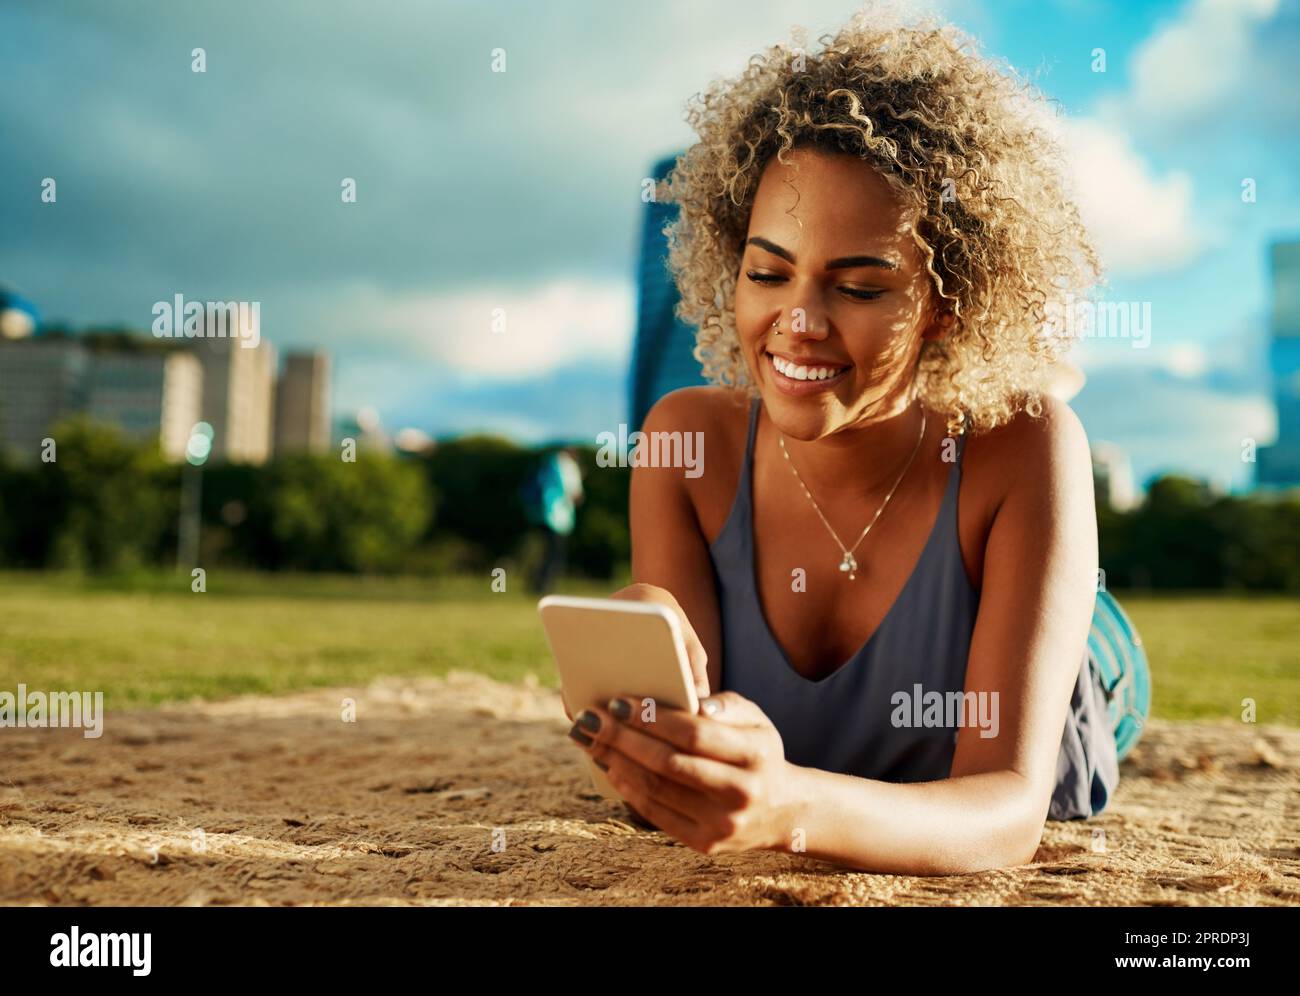 Will mich im Park begleiten. Eine attraktive junge Frau, die ein Smartphone benutzt, während sie sich in einem Park hinlegt. Stockfoto